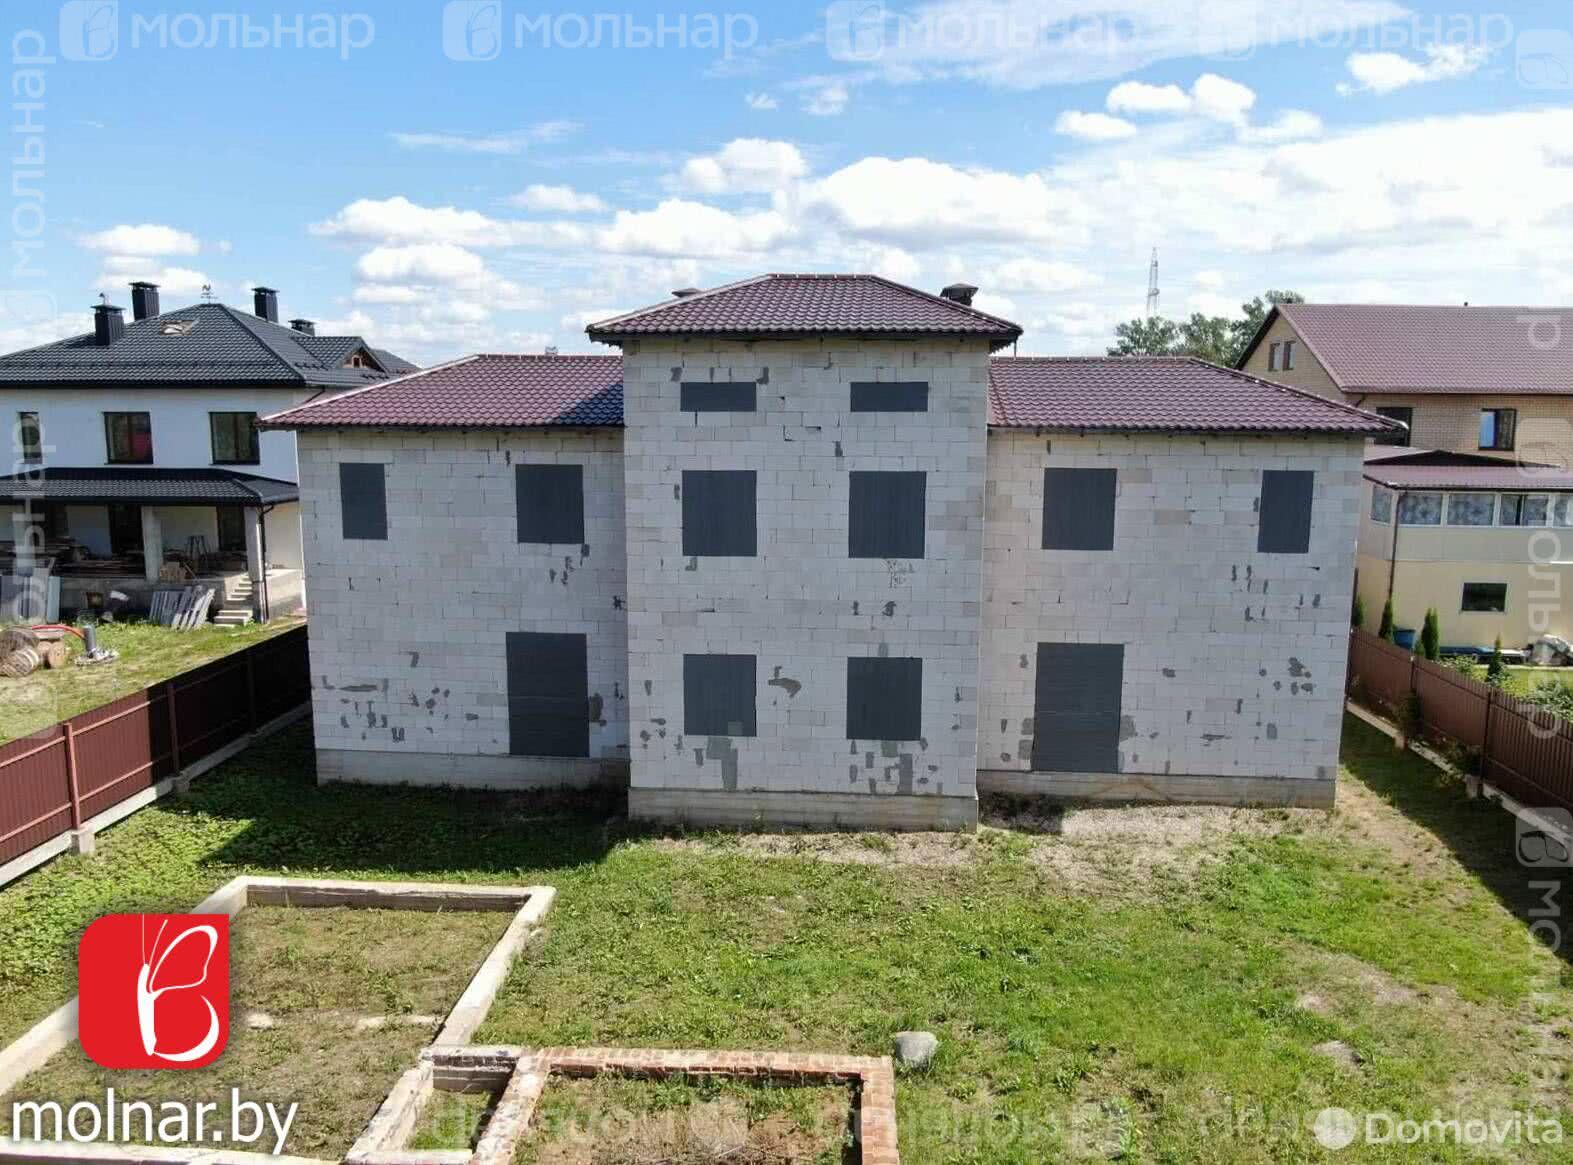 дом, Тарасово, ул. Славянская, стоимость продажи 505 950 р.